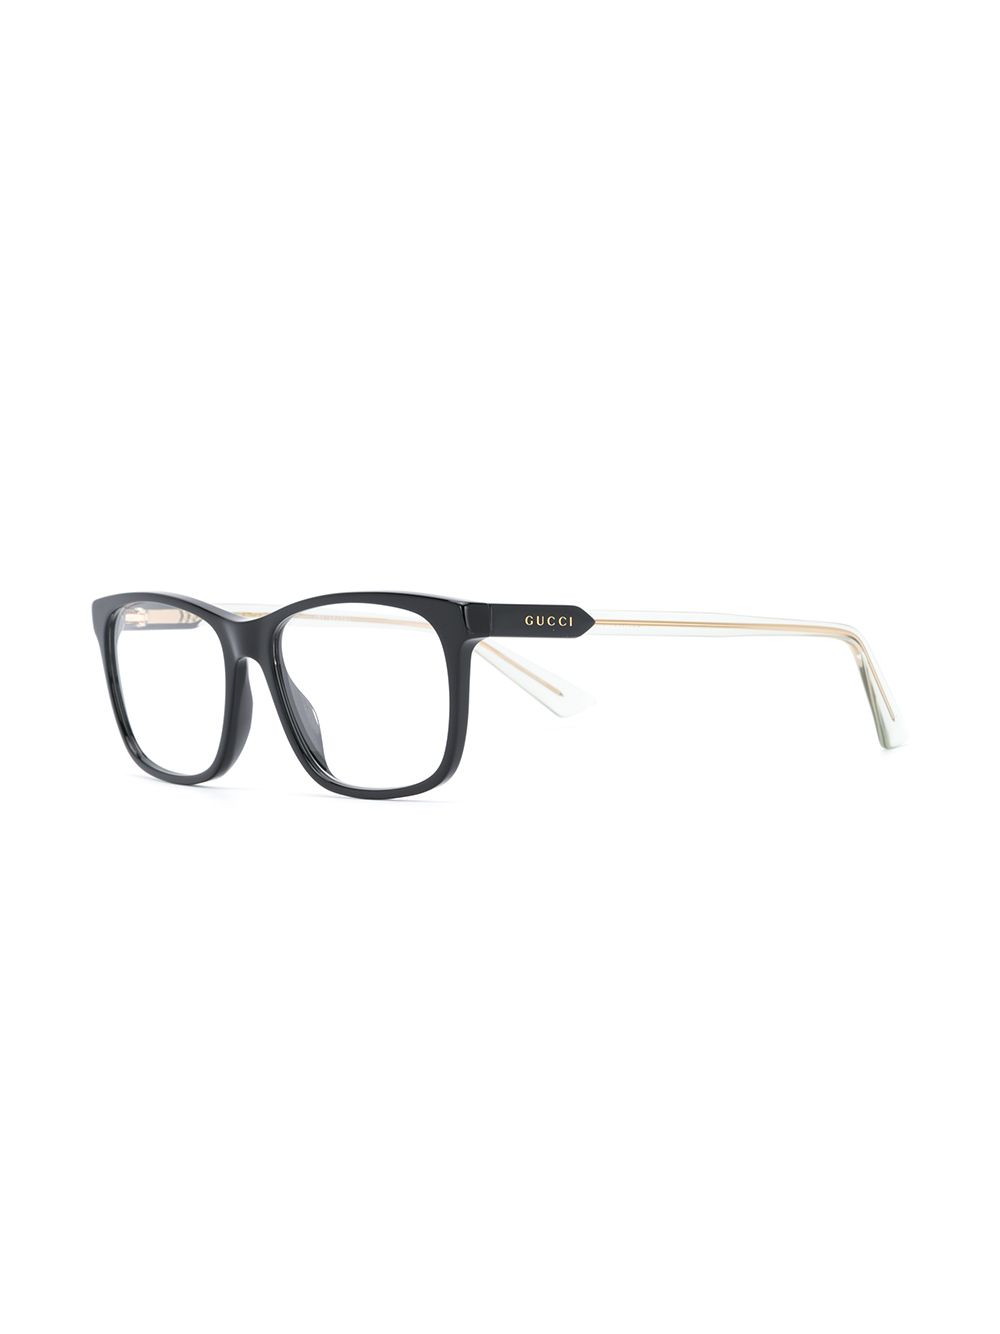 Gucci Eyewear Rectangular Frame Glasses - Farfetch